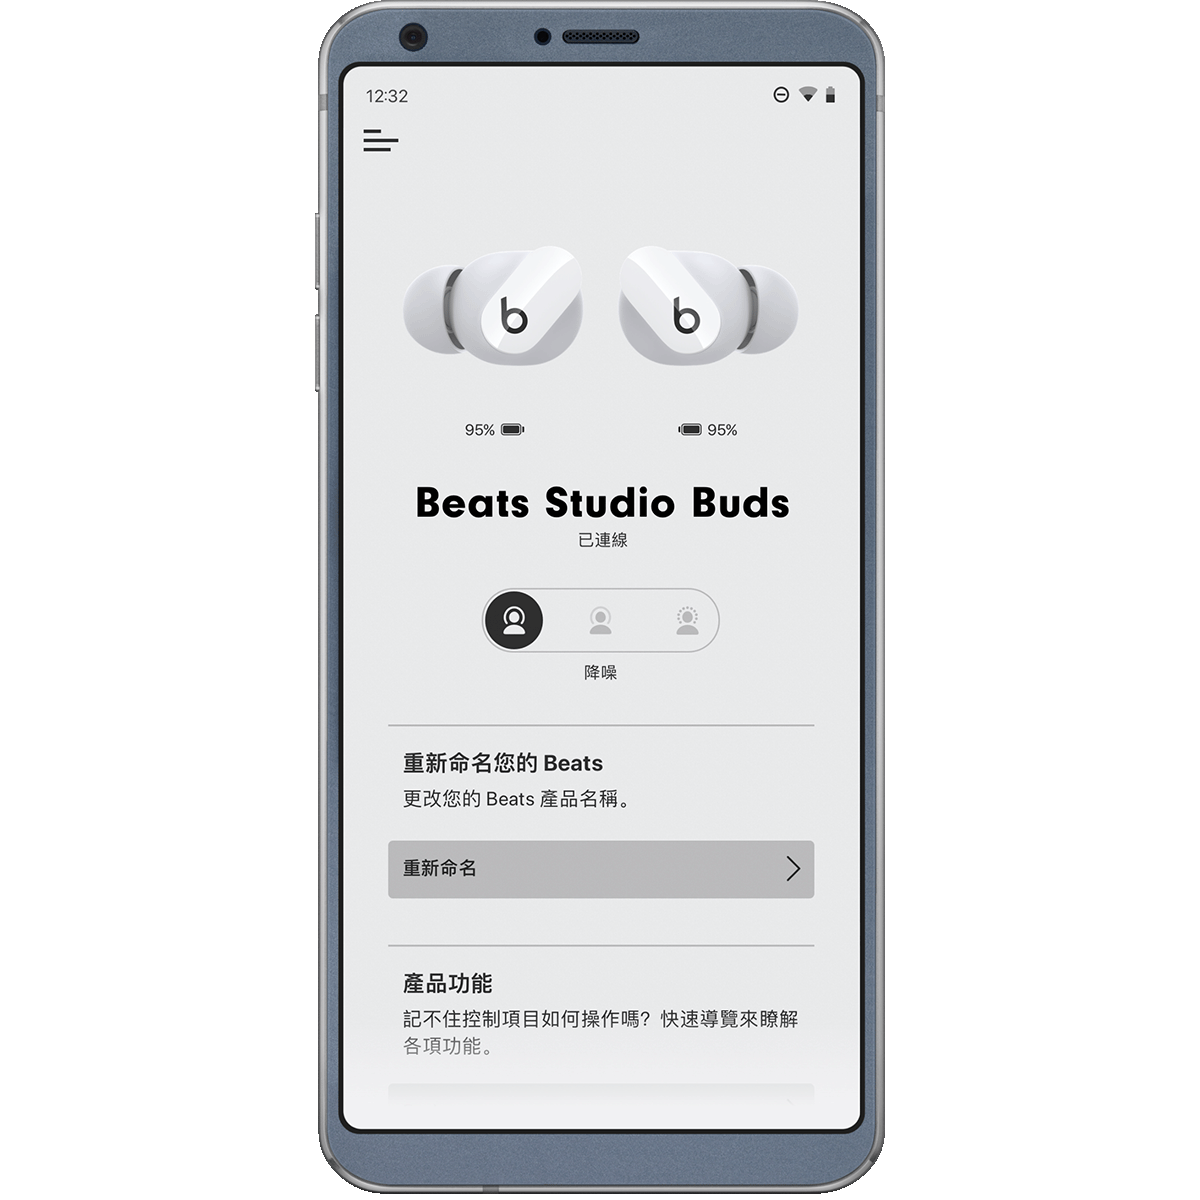 手機上顯示的 Beats App